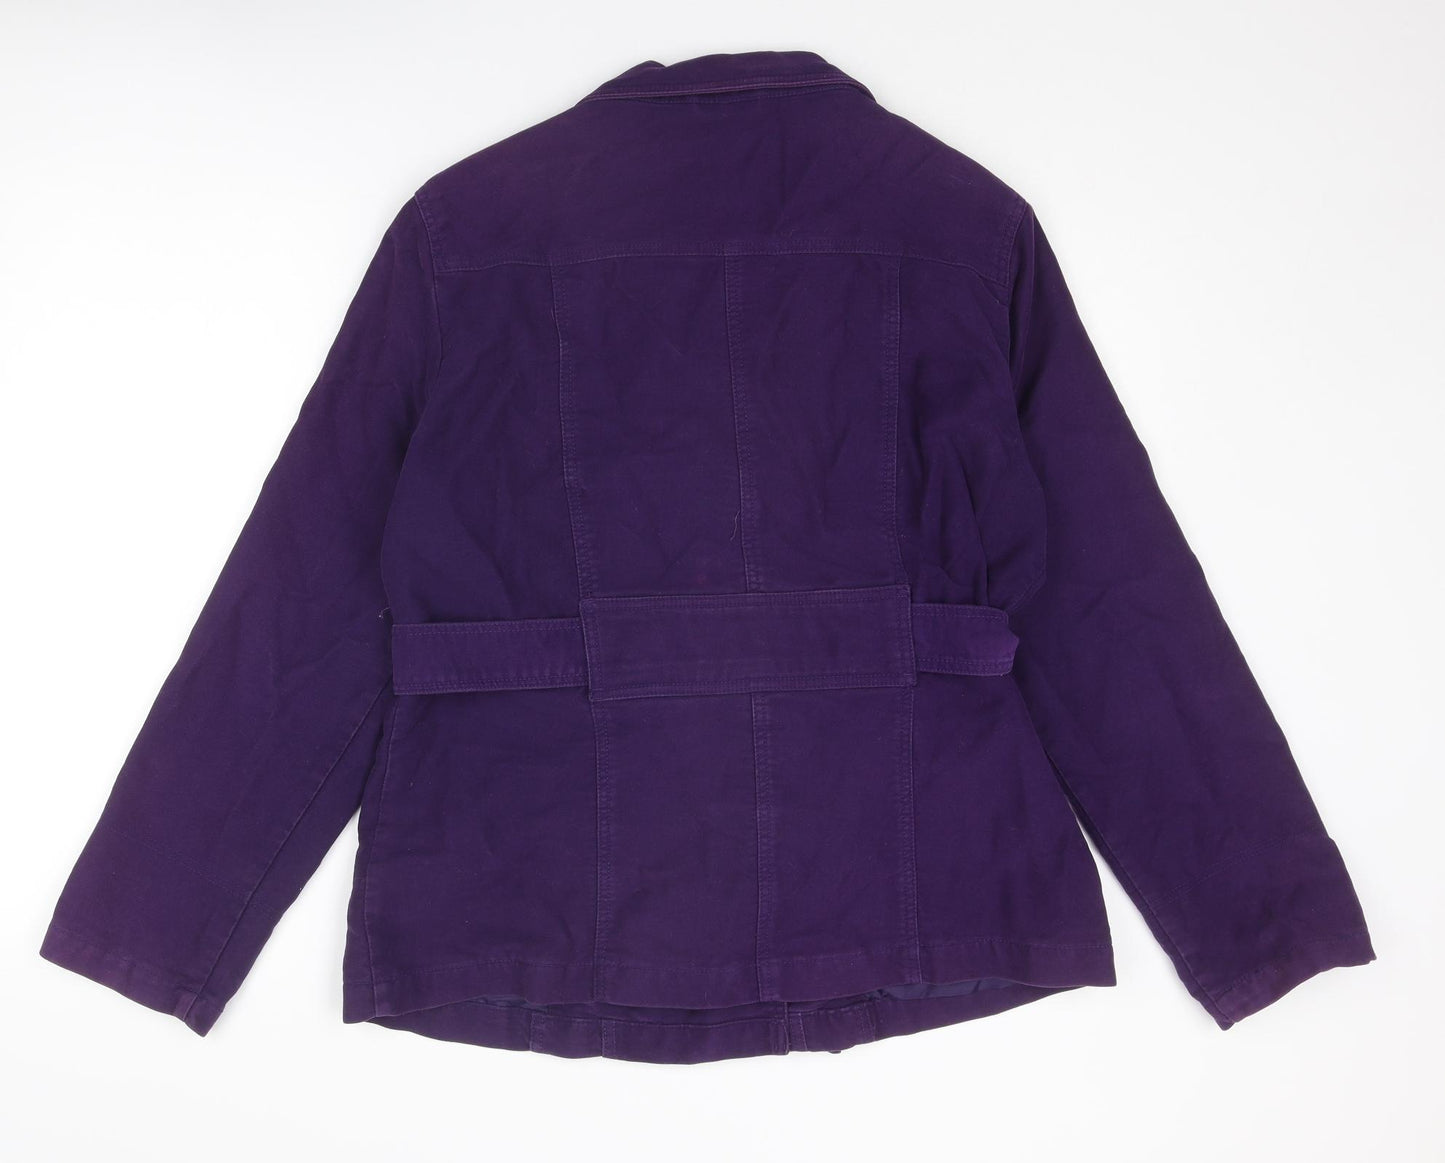 Debenhams Womens Purple Pea Coat Coat Size 16 Button